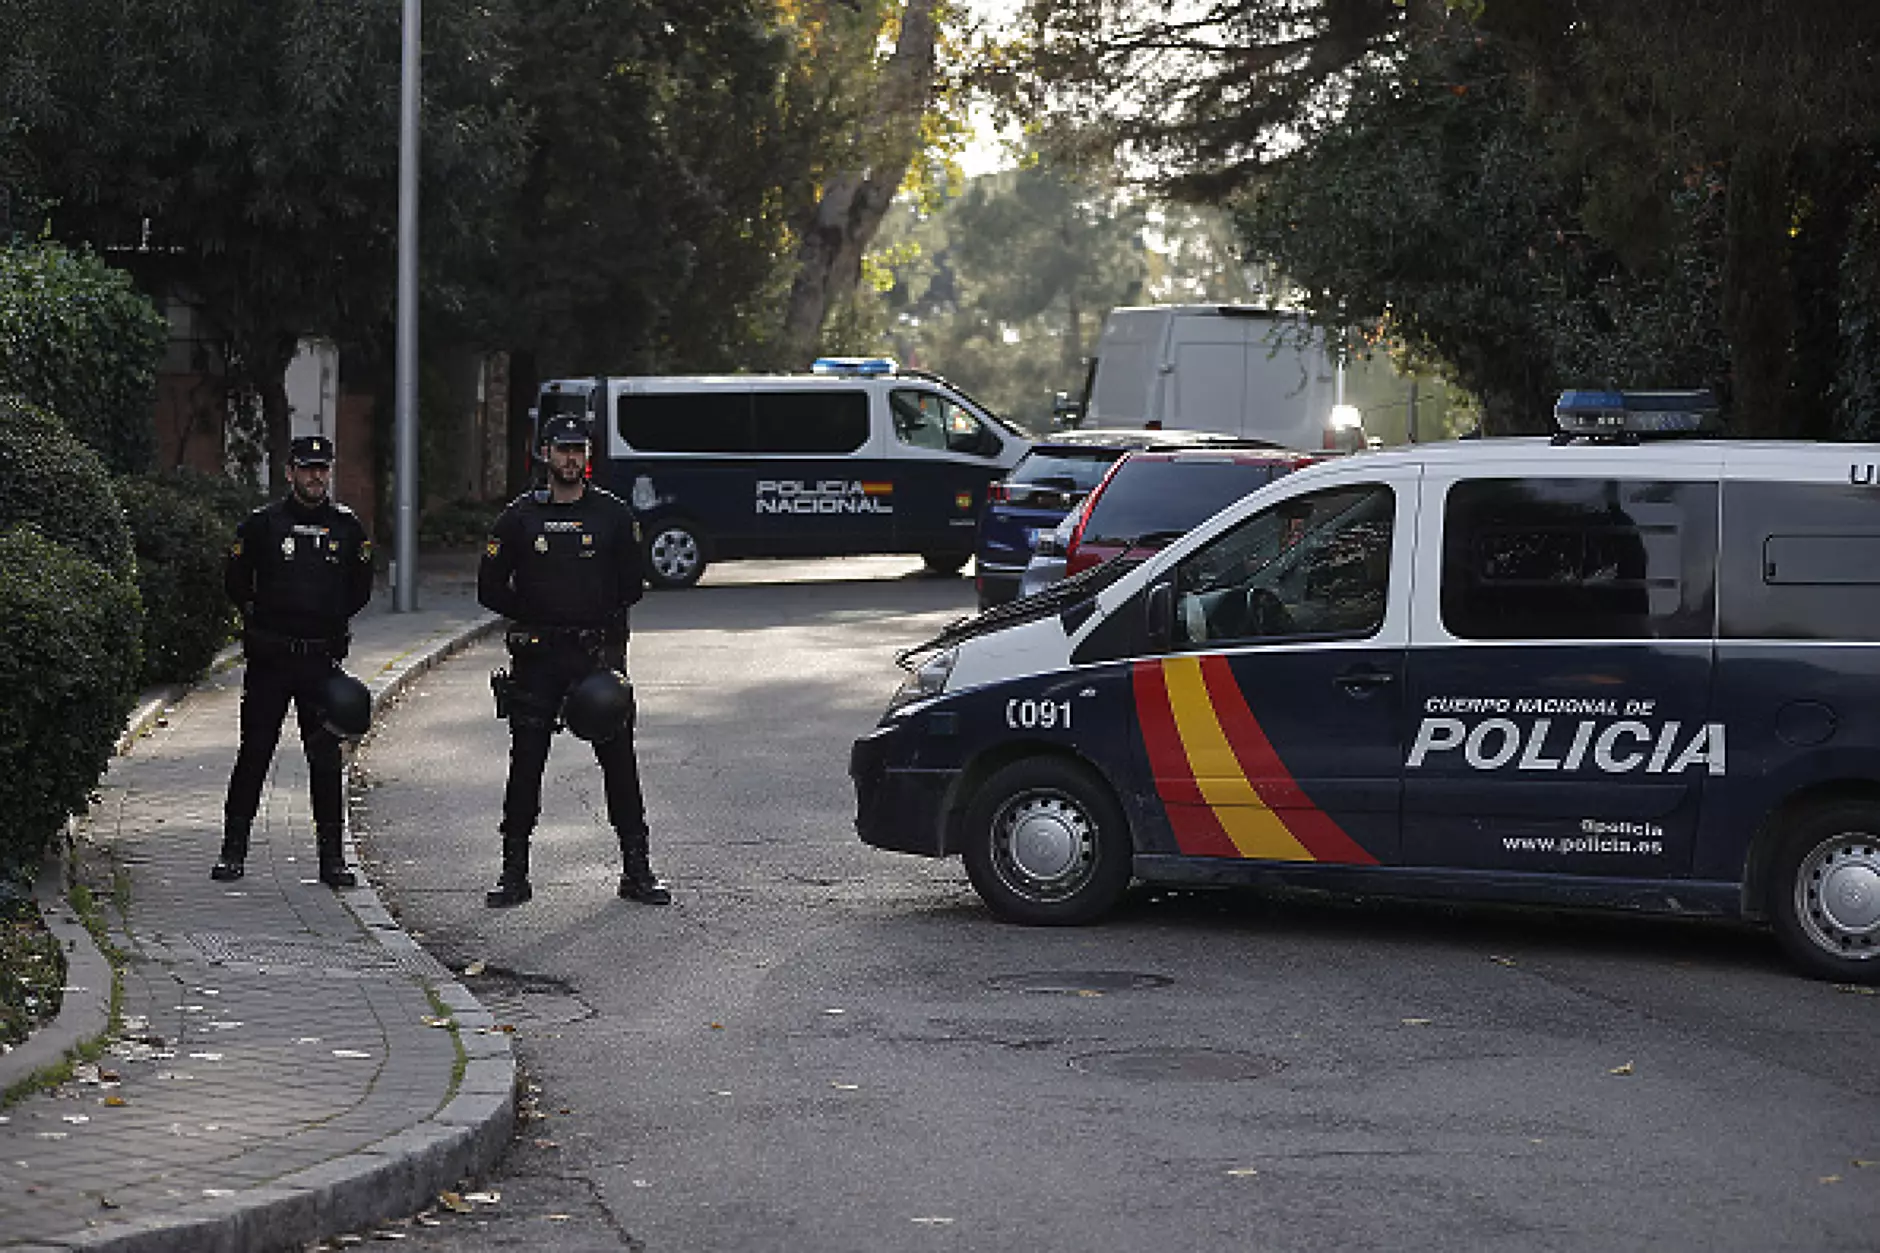 Премиерът Санчес, посолството на САЩ и още 4 важни обекта атакувани с вълна от писма-бомби в Испания